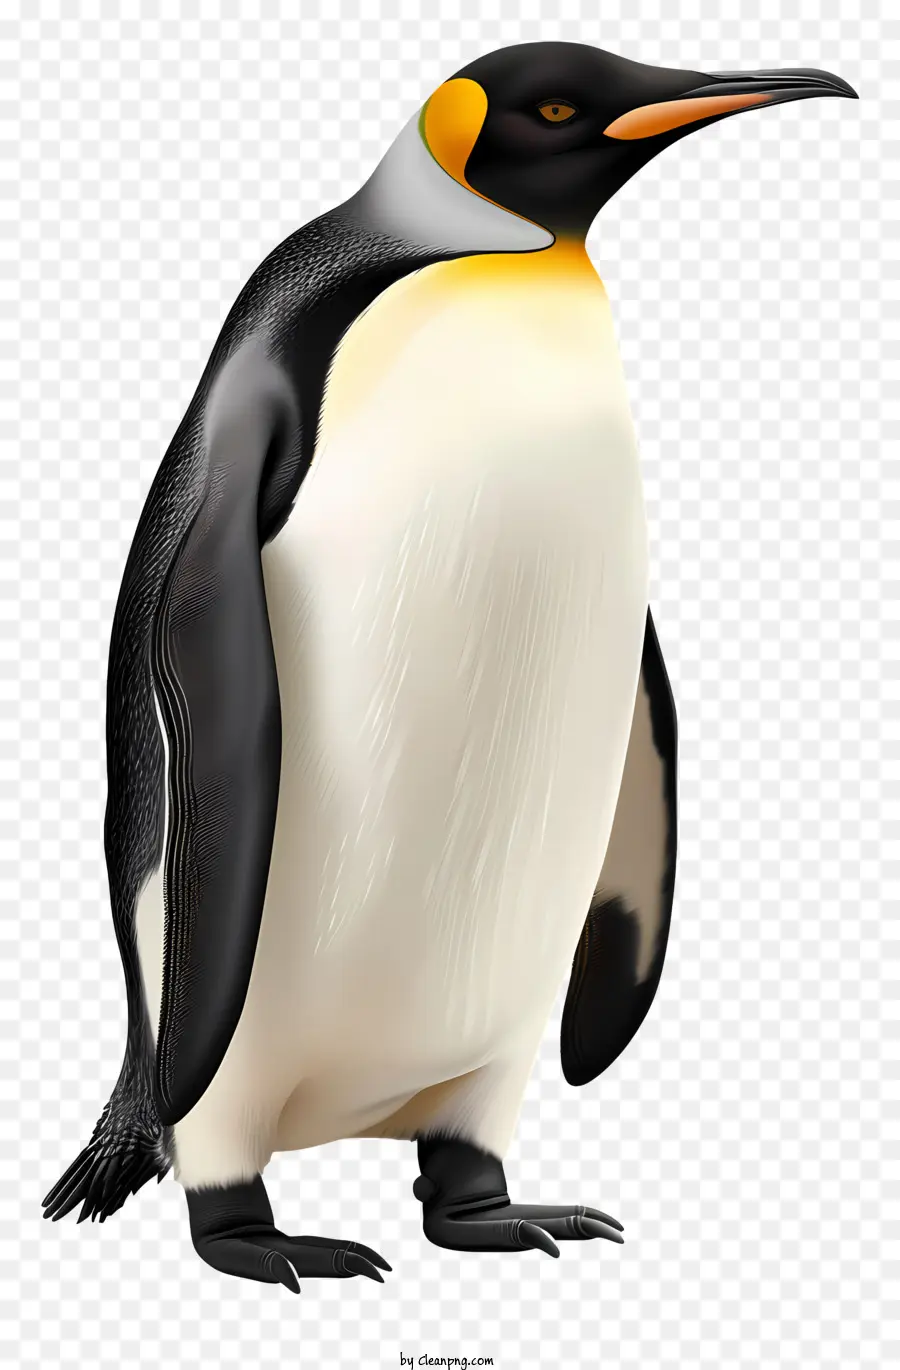 Pinguin - Pinguin mit weißem Körper, orangefarbenem Bauch